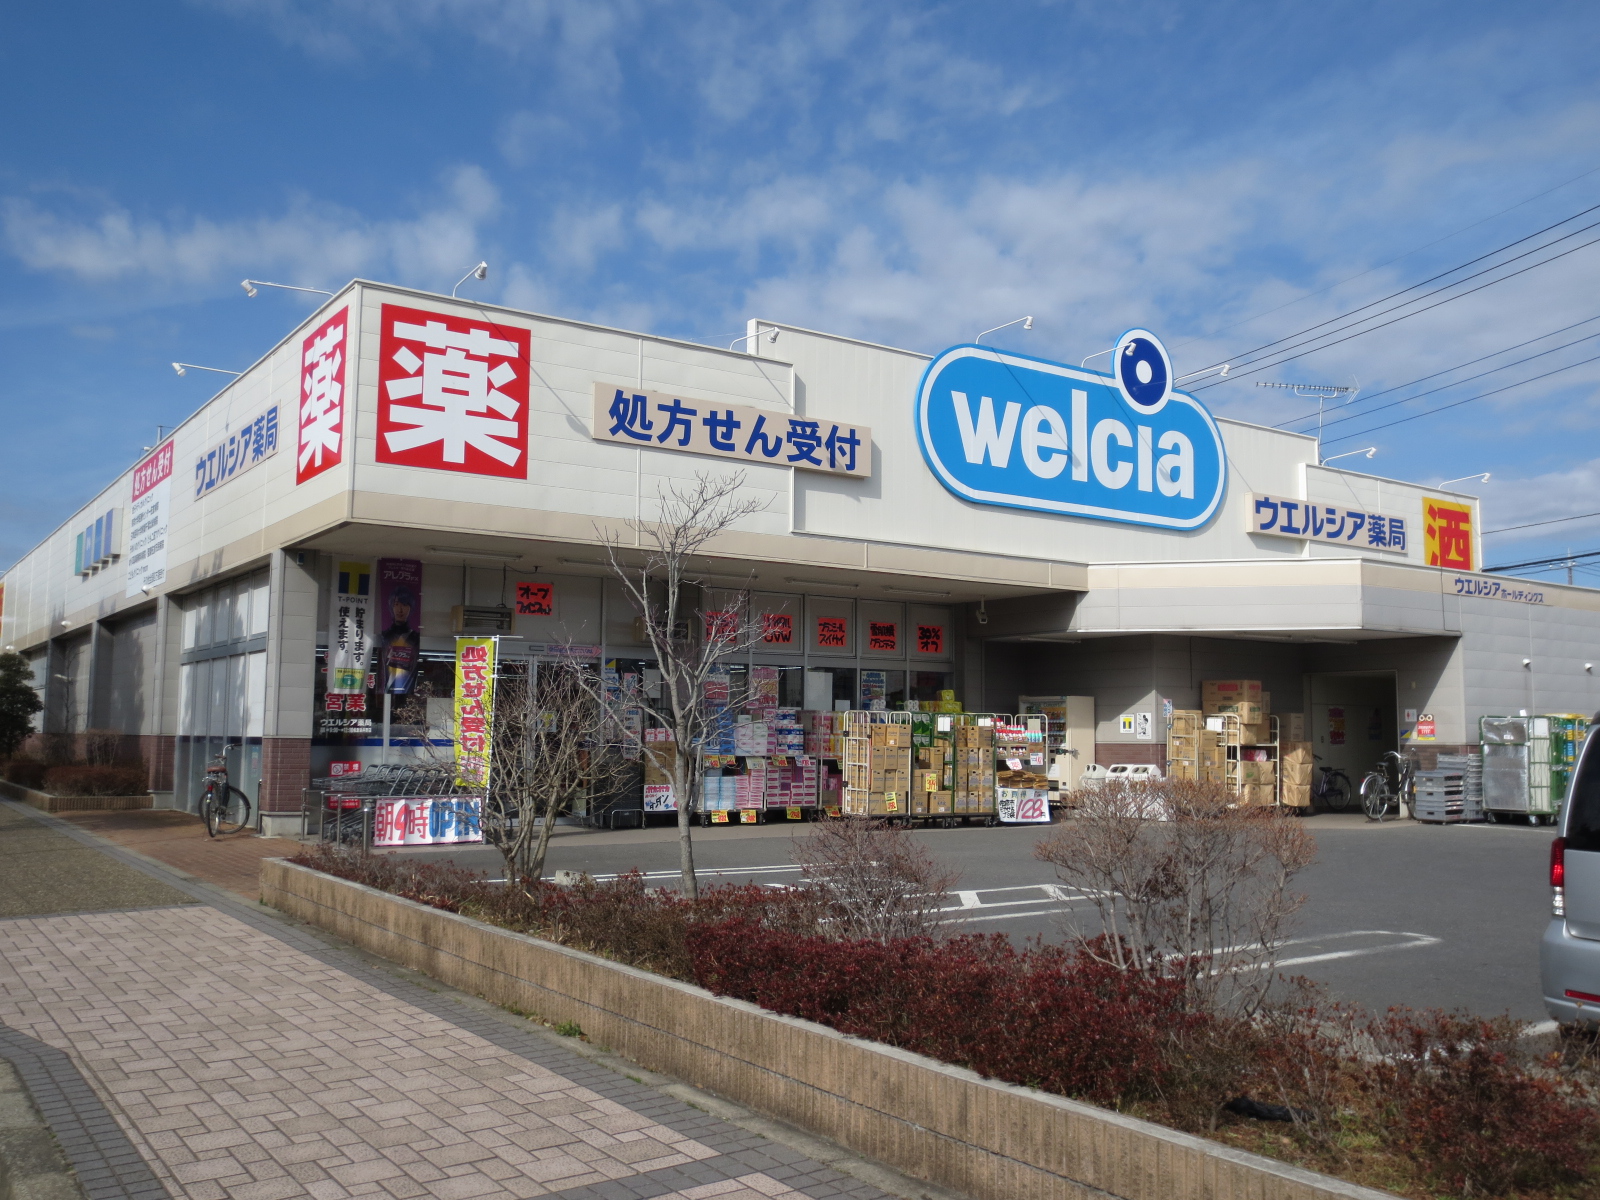 Dorakkusutoa. Uerushia Sakura Someino shop 563m until (drugstore)